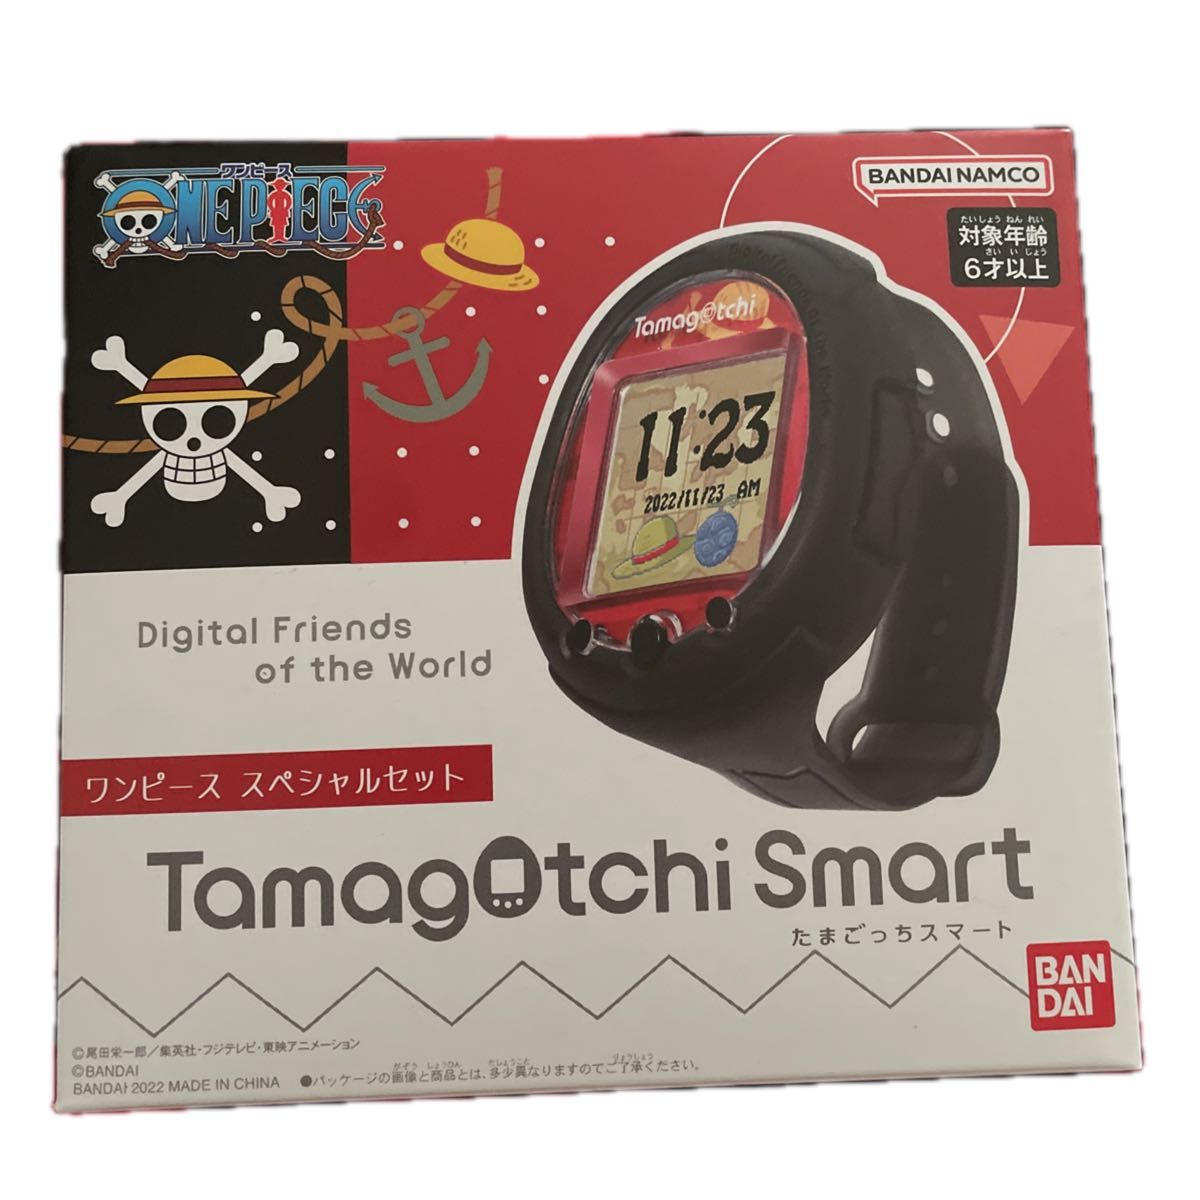 たまごっち Tamagotchi Smart ワンピーススペシャルセット (対象年齢:6歳以上) 管理番号AP